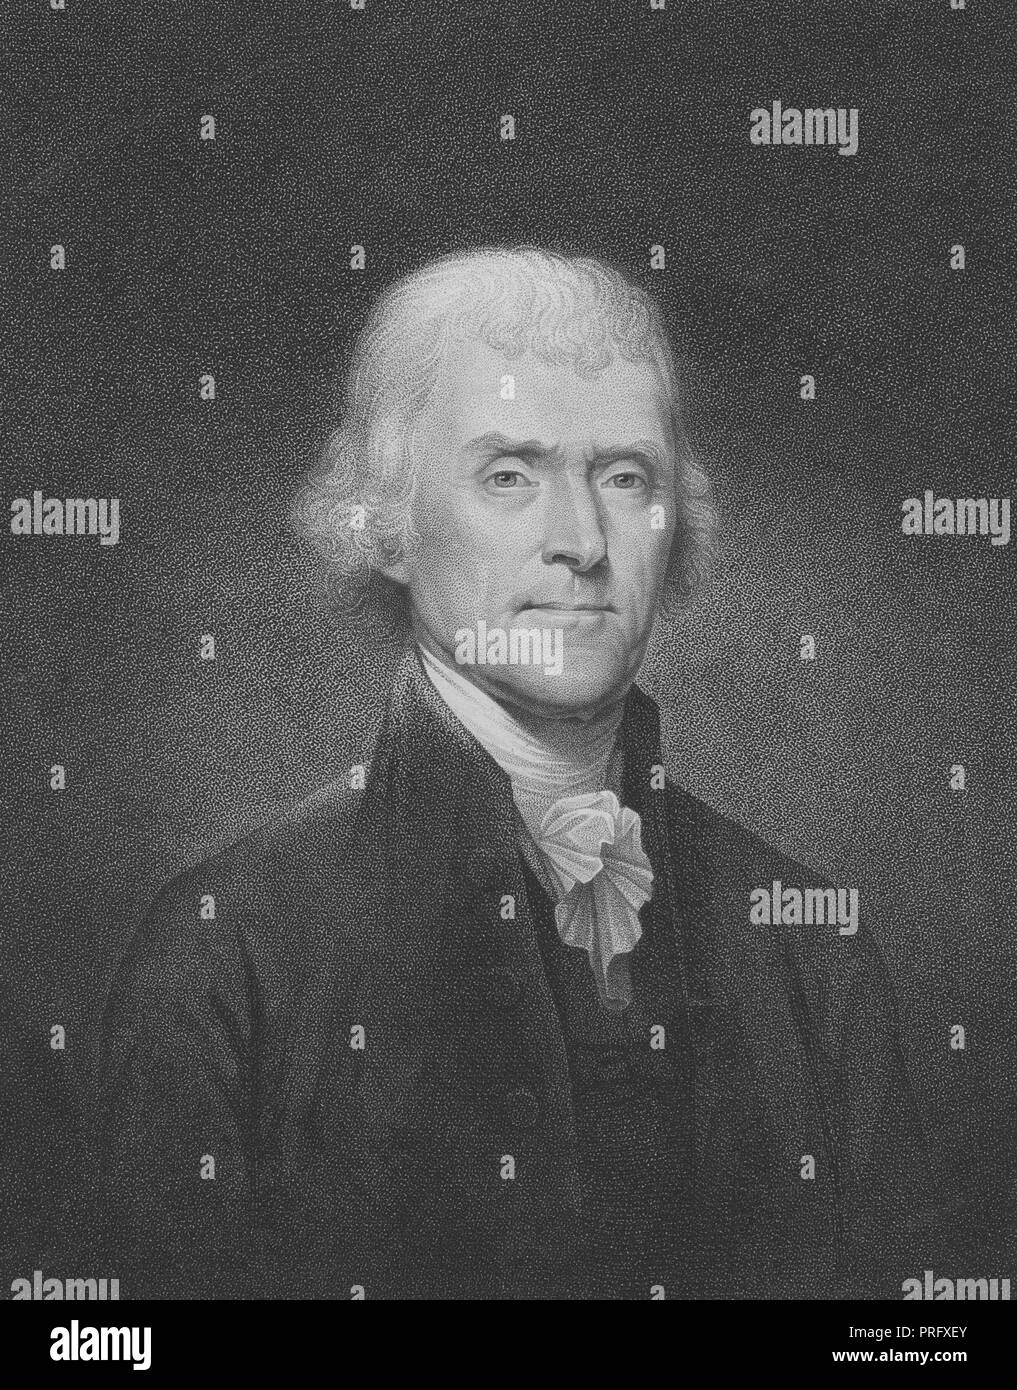 Graviert Portrait von Thomas Jefferson, den dritten Präsidenten der Vereinigten Staaten und Mitglied des Continental Congress, ein amerikanischer Gründervater von Shadwell, Virginia, 1837. Von der New York Public Library. () Stockfoto